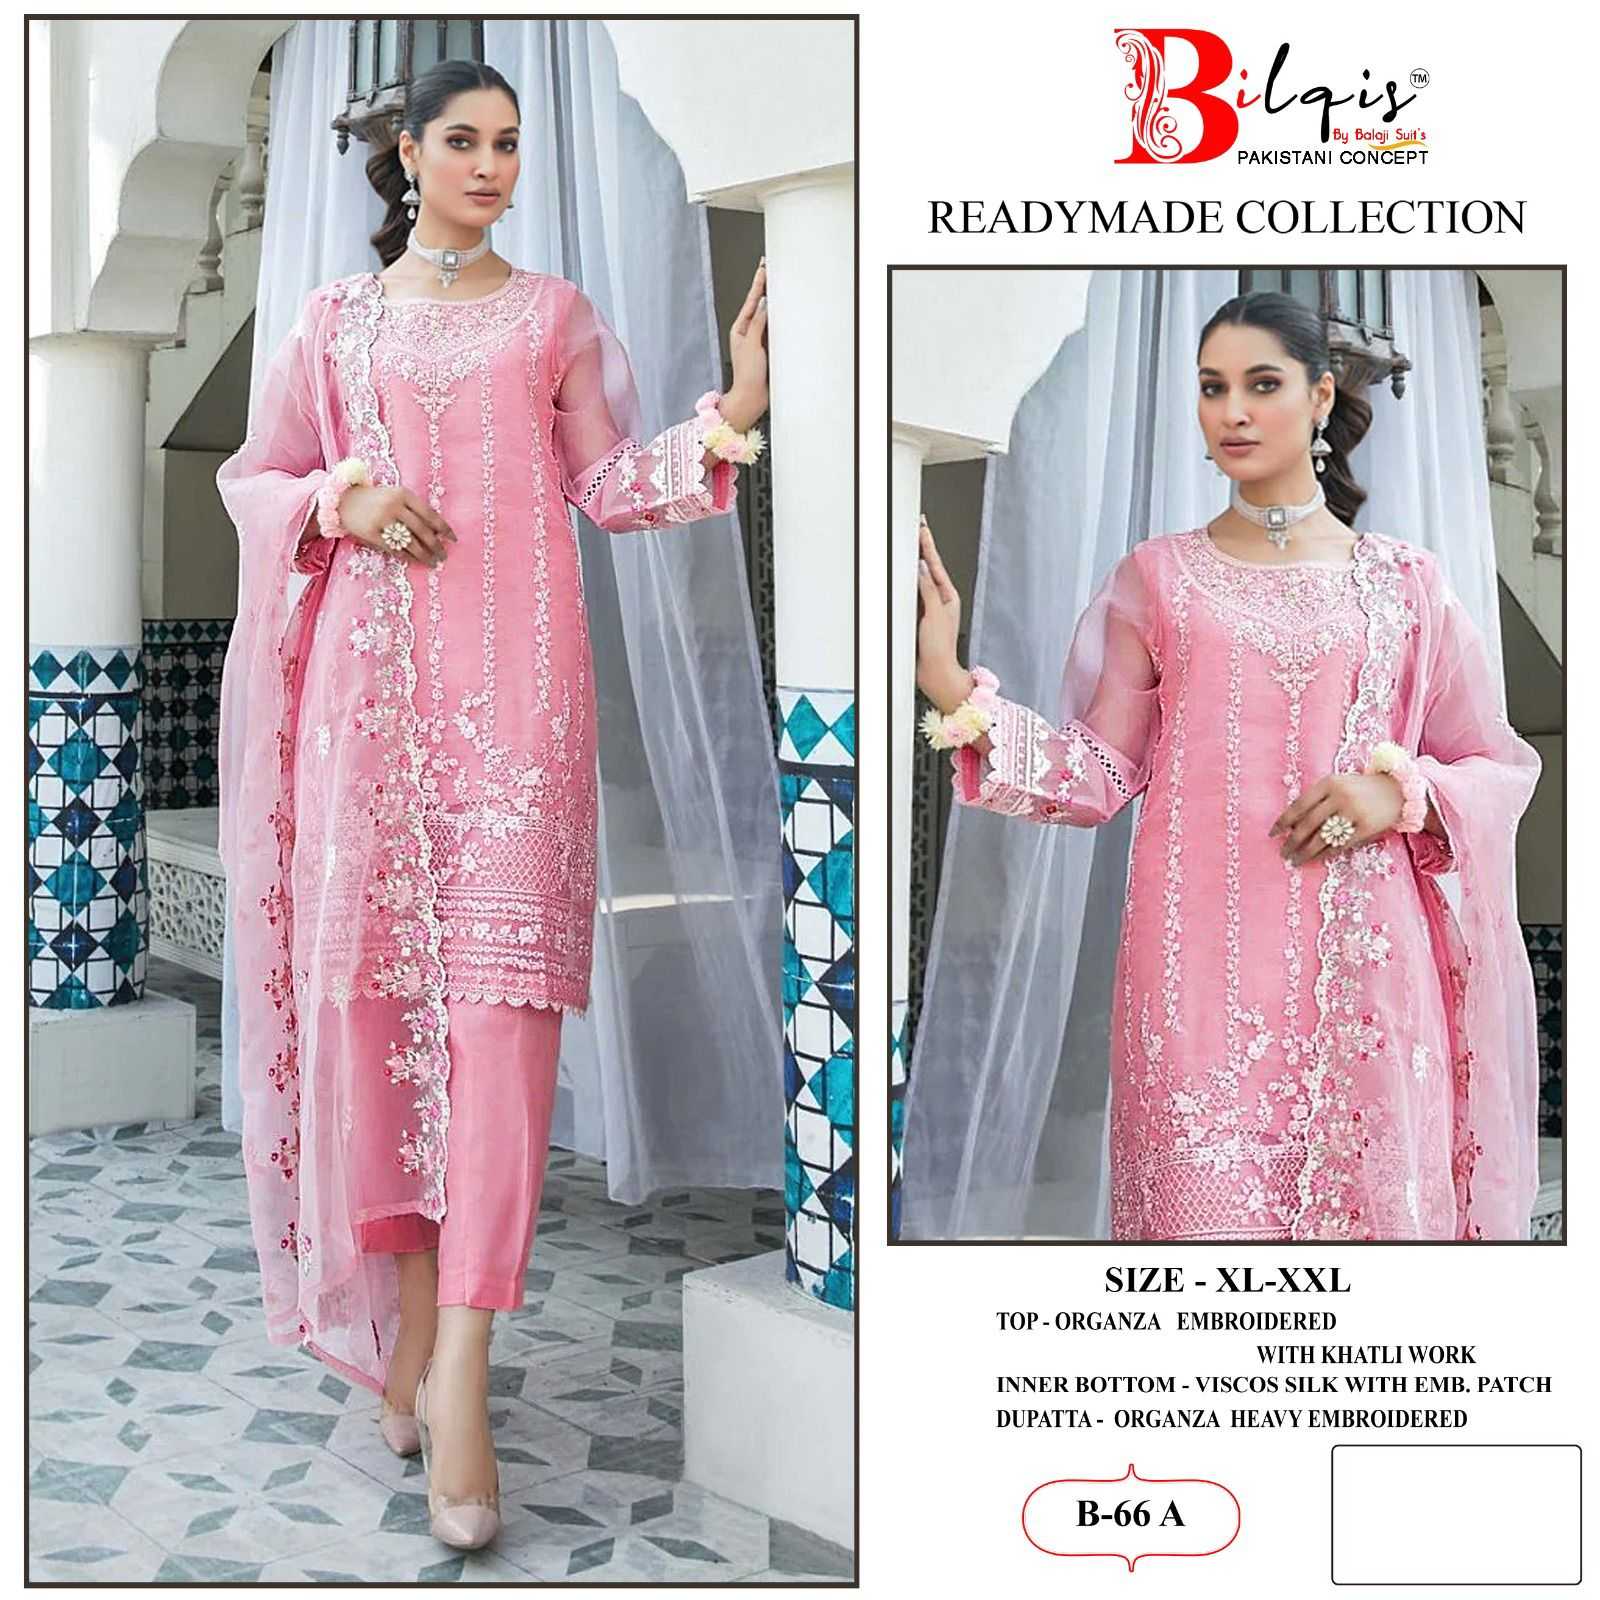 Bilqis B 66 A To D Organza Pakistani Suits Wholesale catalog